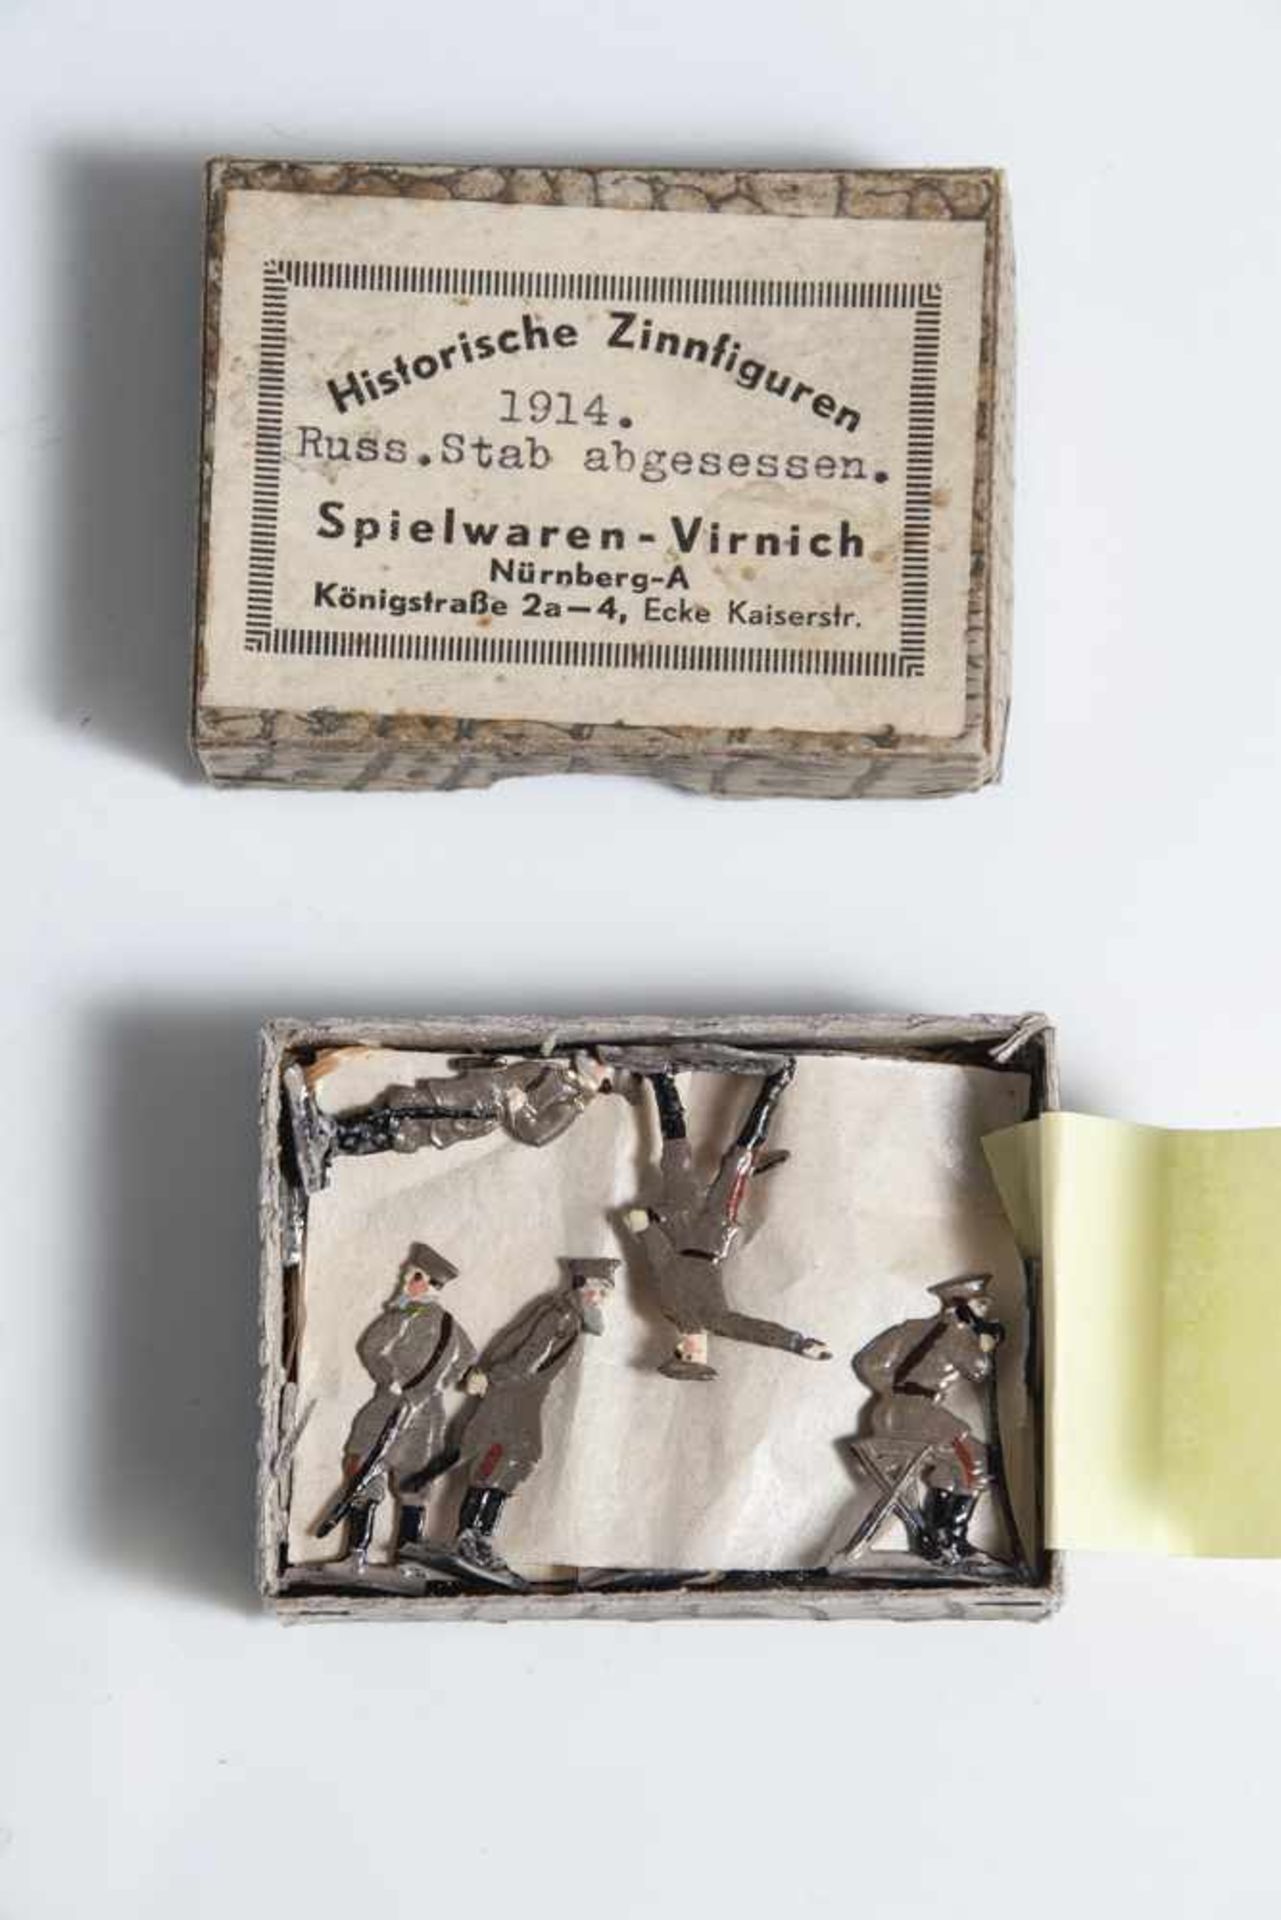 1 Schachtel Zinnfiguren, "1914 Russ. Stab abgesessen", Historische Zinnfiguren, Spielwaren